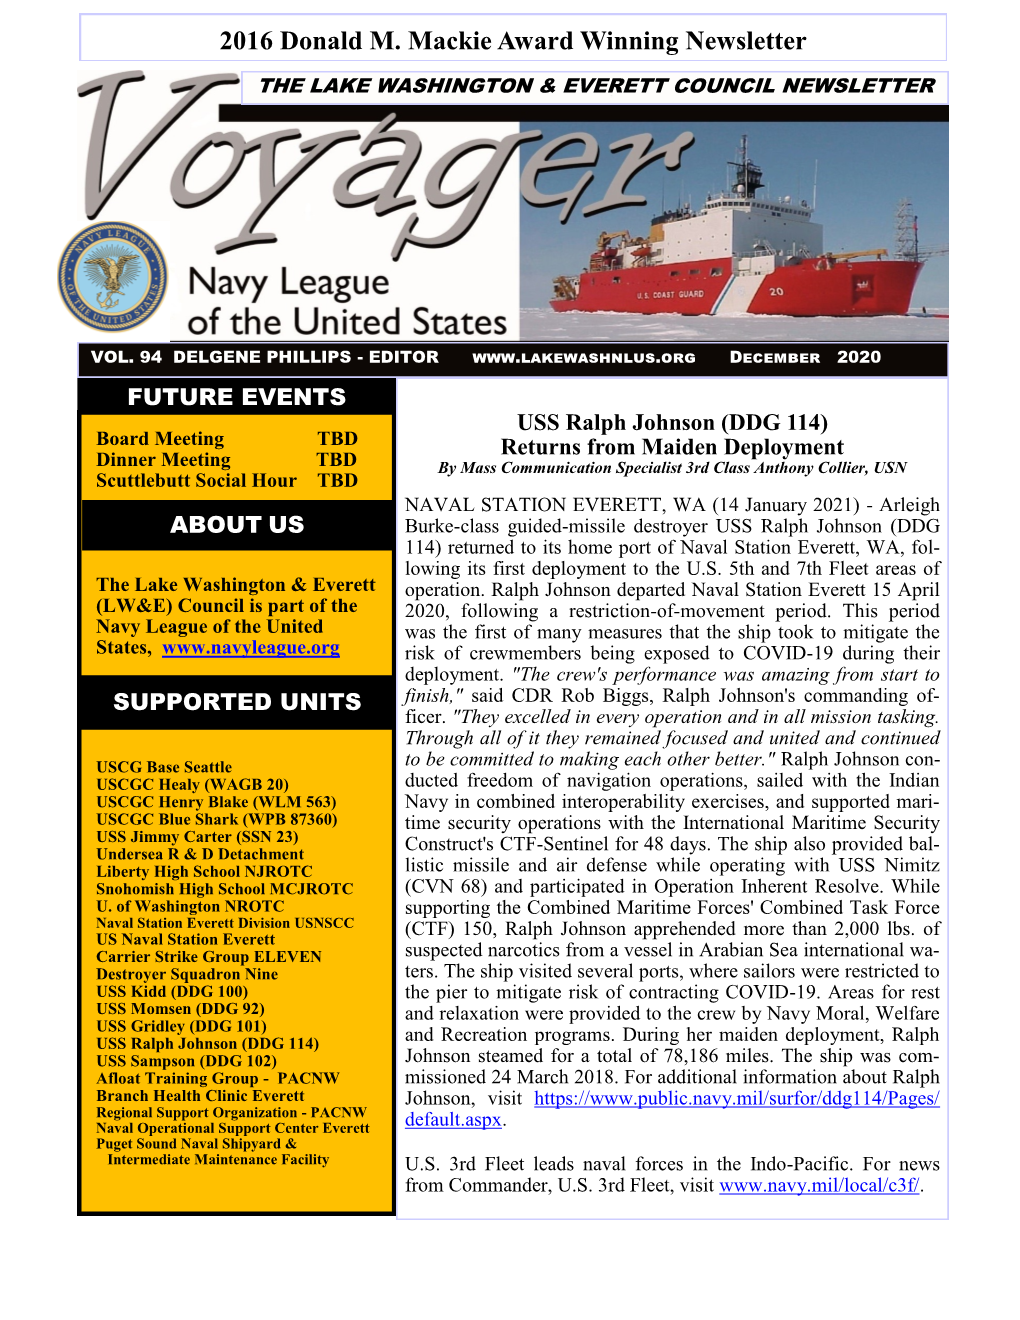 December 2020 Voyager Newsletter